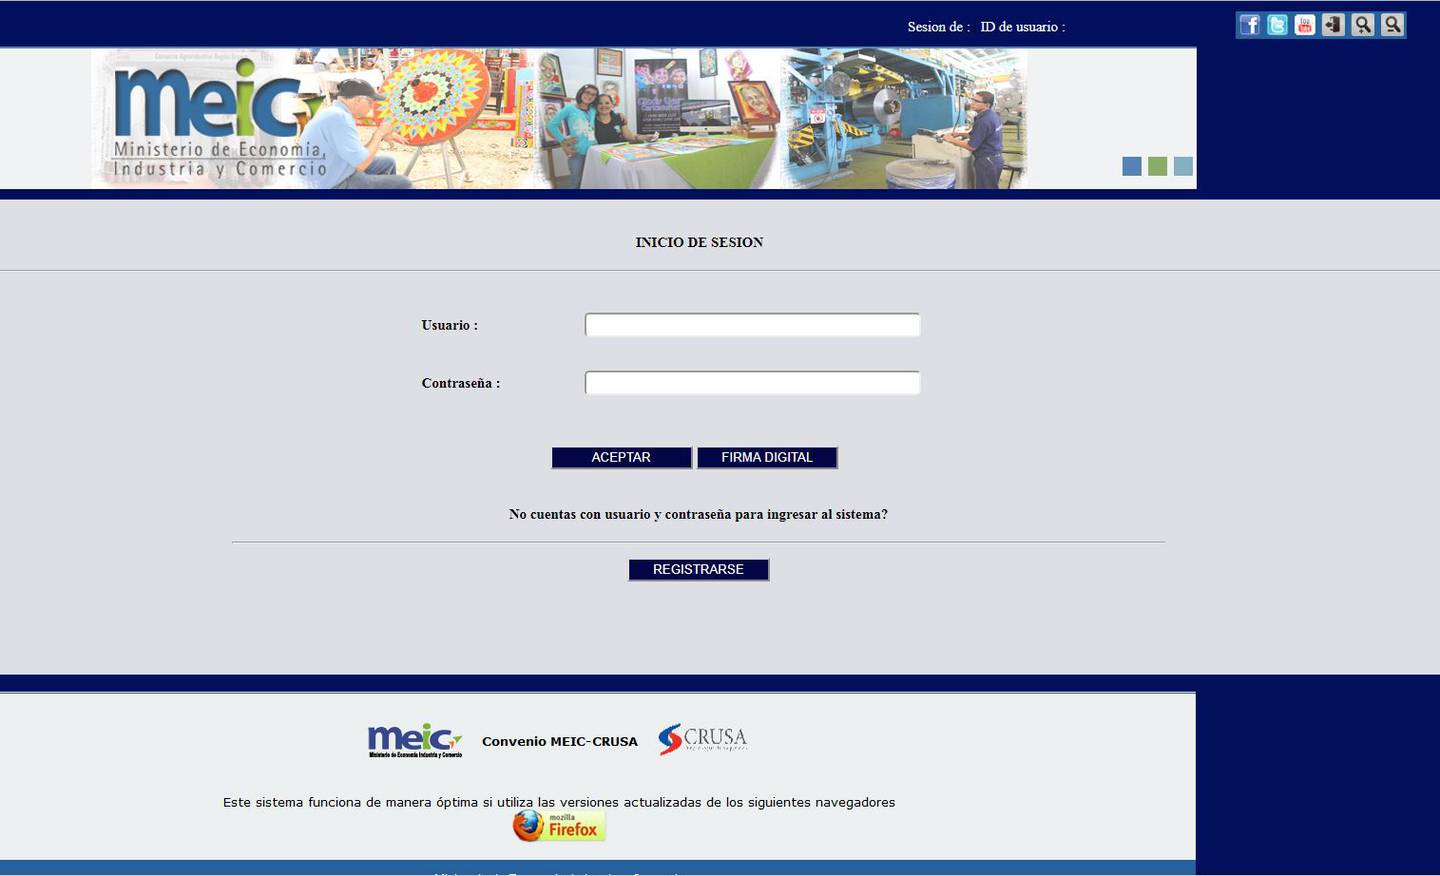 El MEIC difundió una imagen sobre el sitio falso para Registro Pyme. La página usa características similares a la oficial para confundir a los empresarios. Reproducción Cortesía de MEIC.